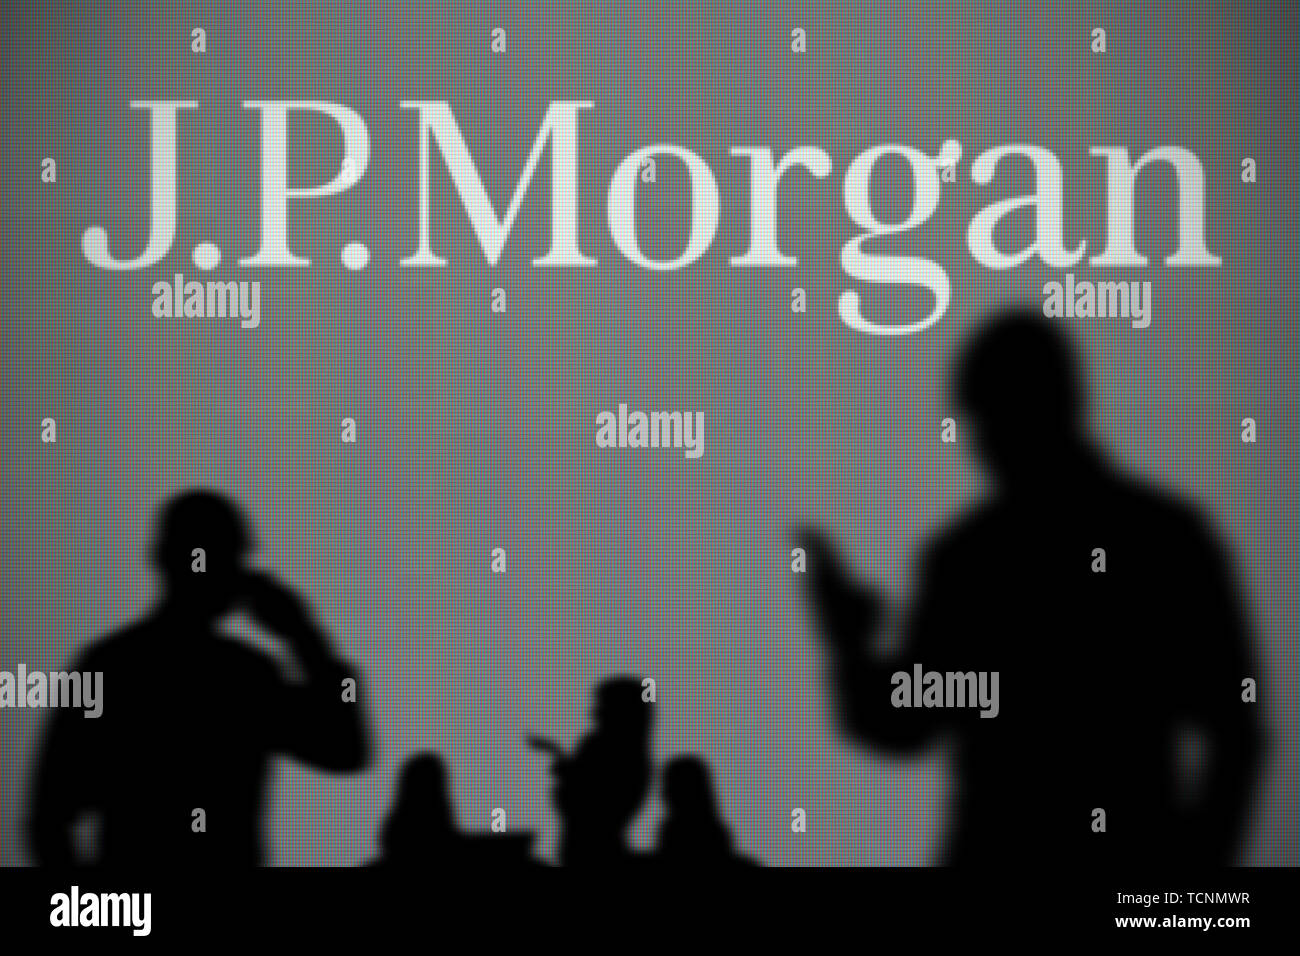 Le JP Morgan logo est visible sur un écran LED à l'arrière-plan tandis qu'une personne utilise la silhouette d'un smartphone dans l'avant-plan (usage éditorial uniquement) Banque D'Images